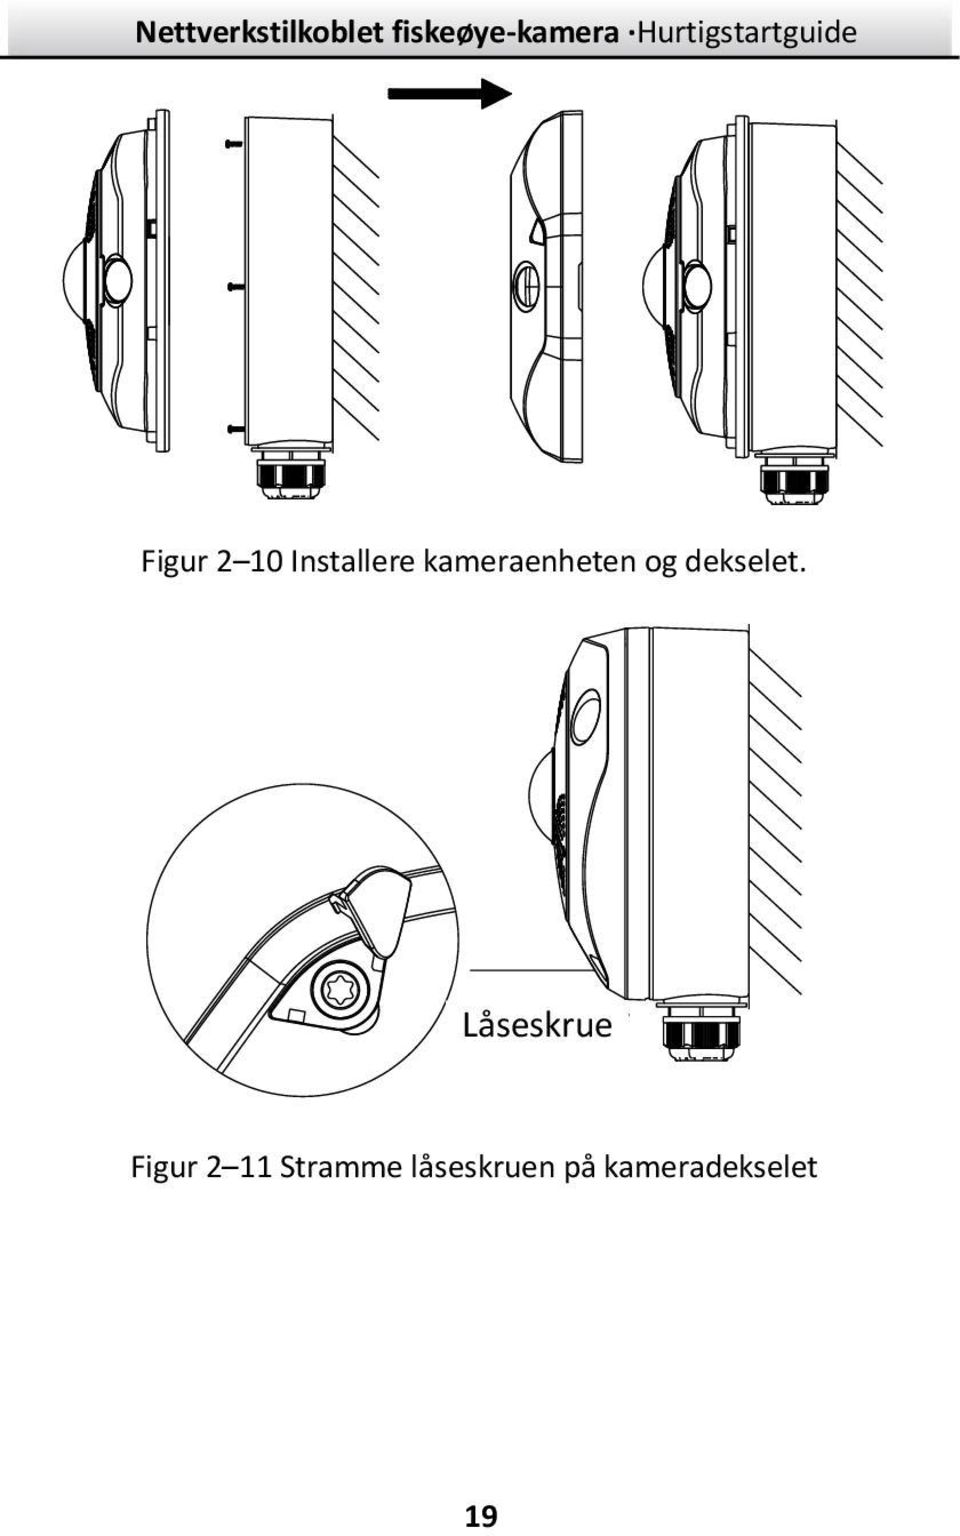 Lock Screw Låseskrue Figur 2